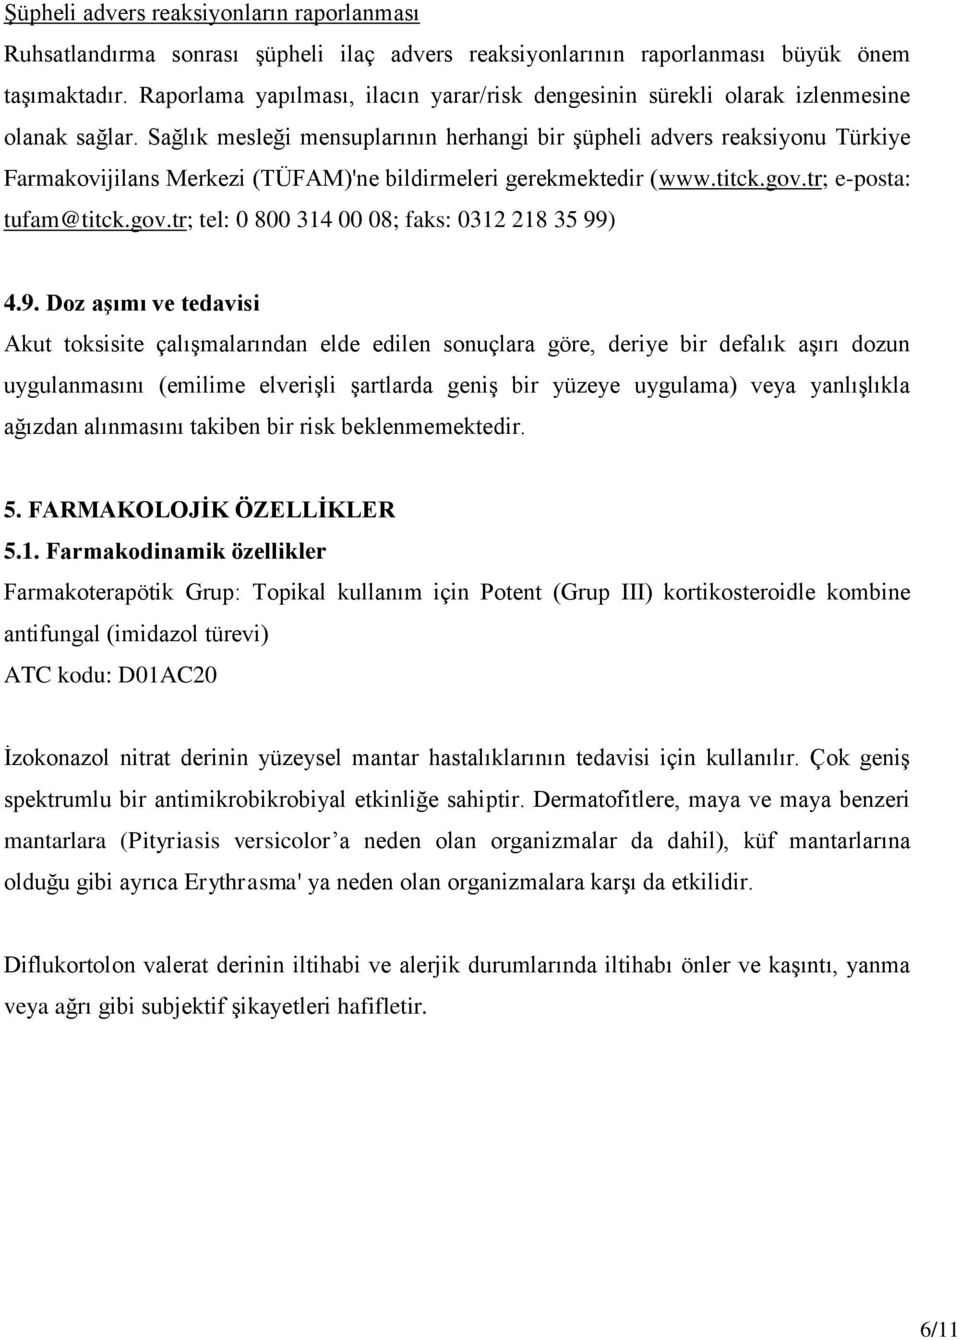 Sağlık mesleği mensuplarının herhangi bir şüpheli advers reaksiyonu Türkiye Farmakovijilans Merkezi (TÜFAM)'ne bildirmeleri gerekmektedir (www.titck.gov.